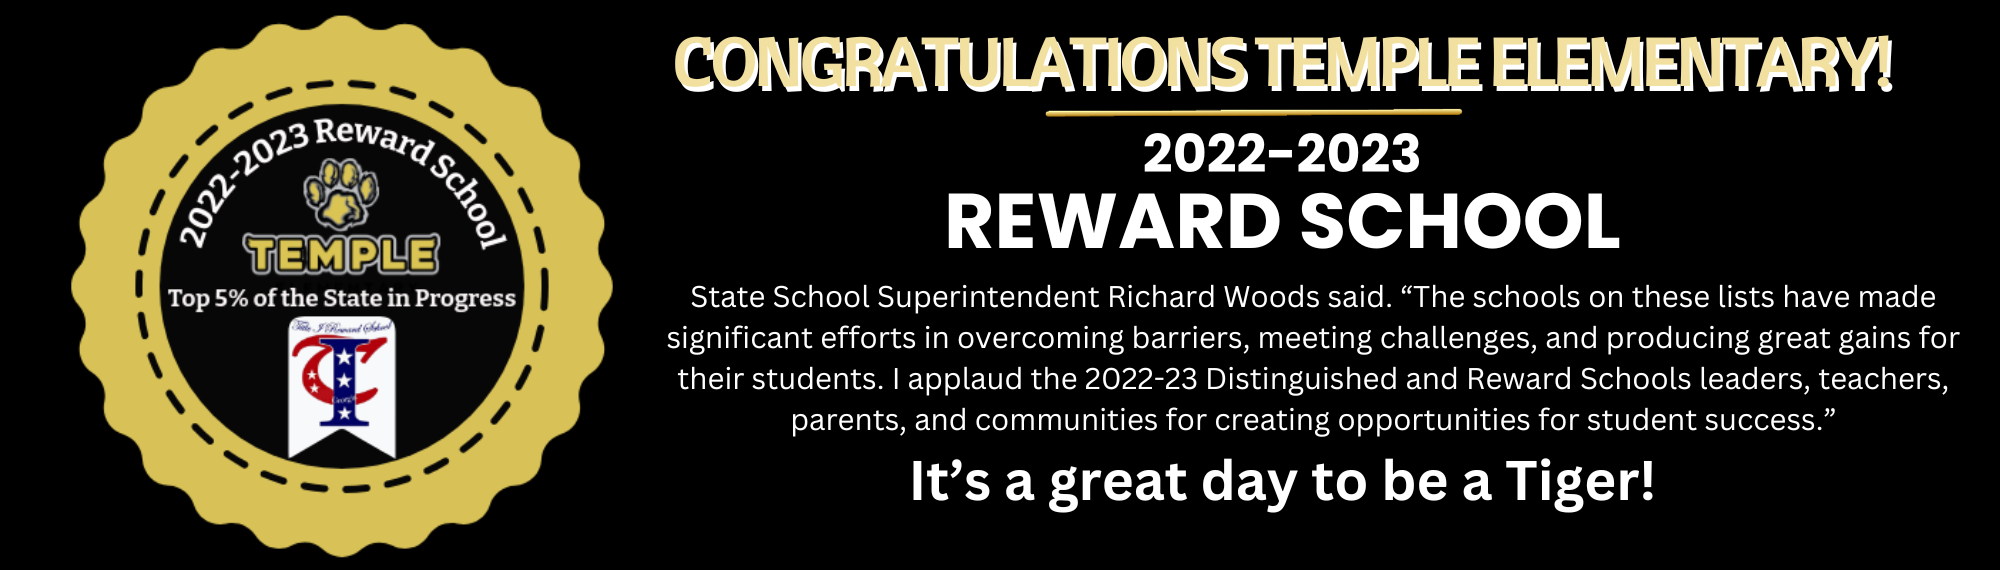 Reward School Banner 